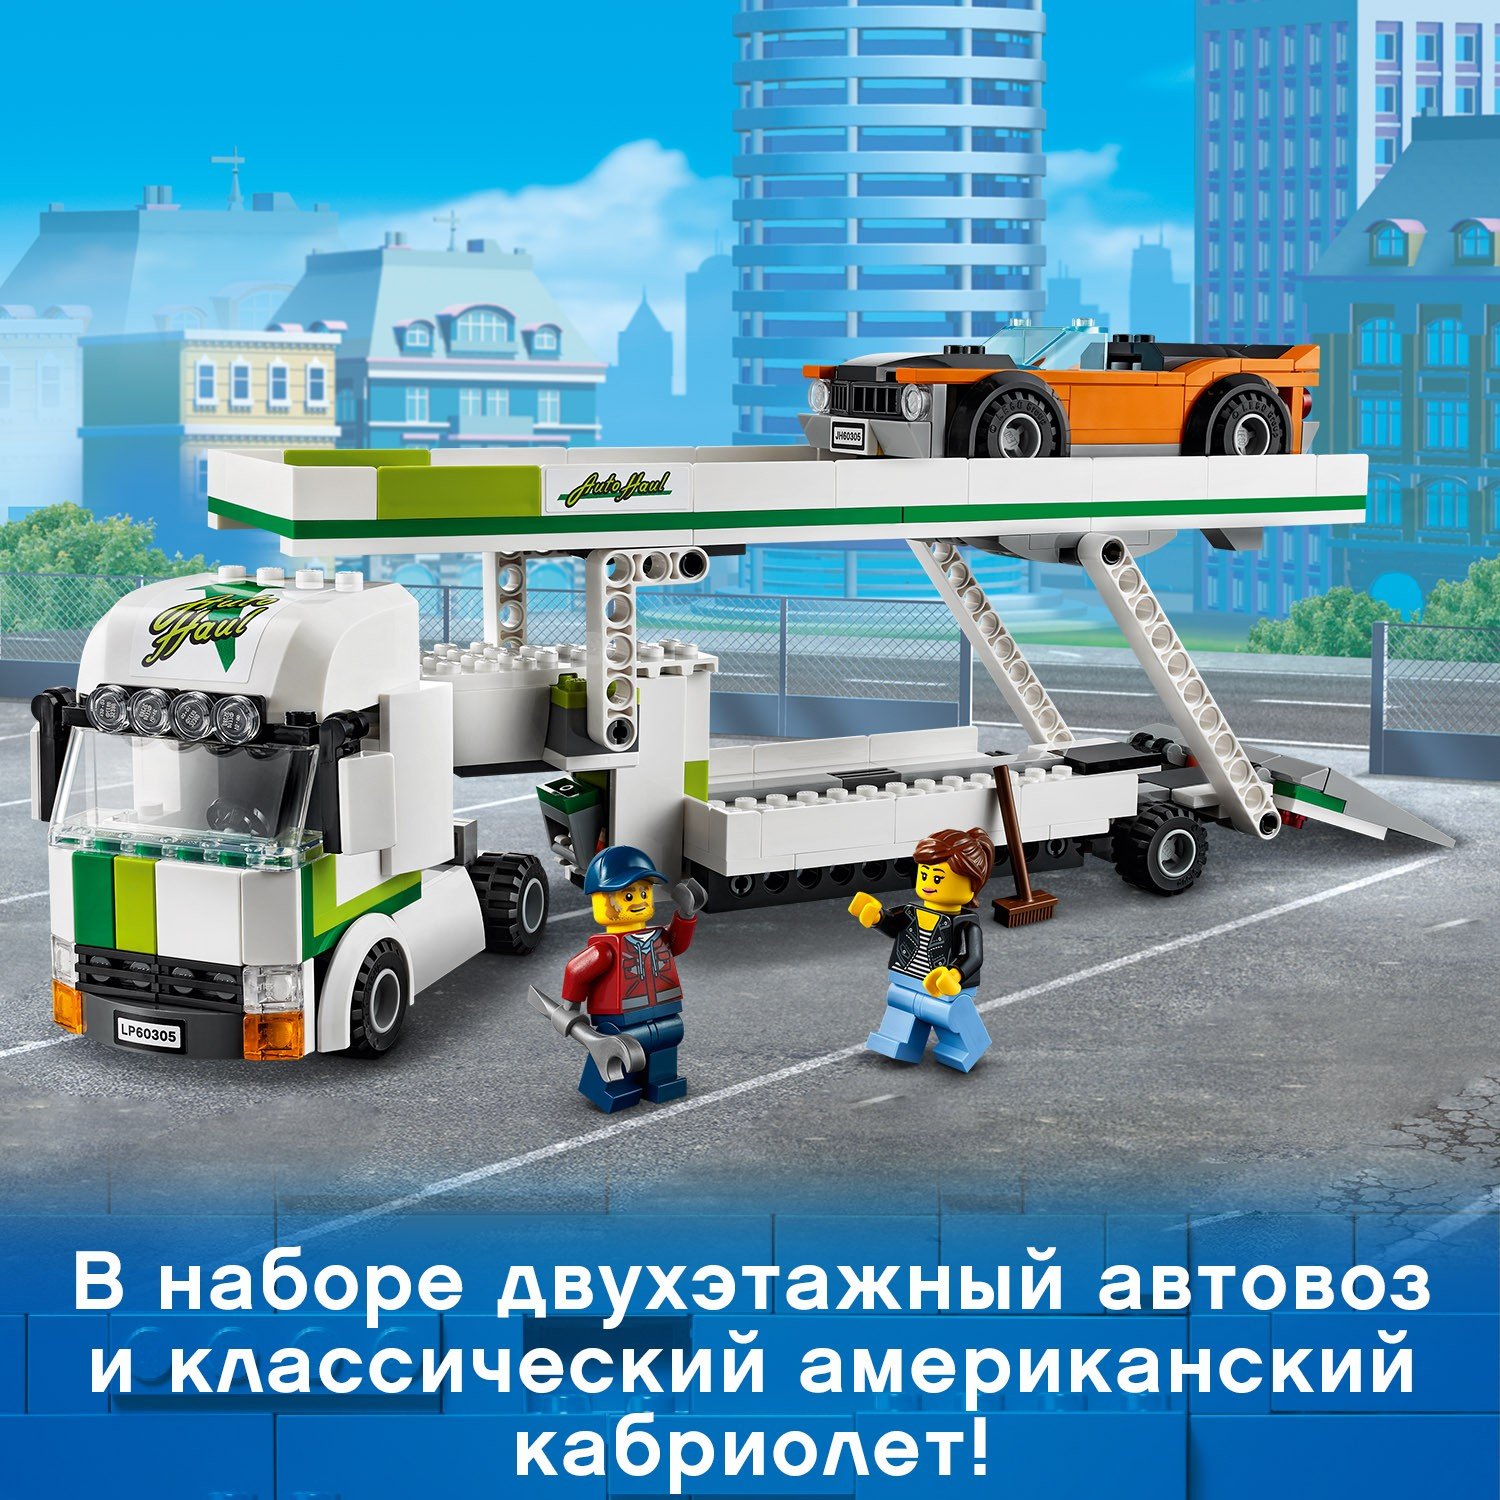 Конструктор LEGO City 60305 Автовоз